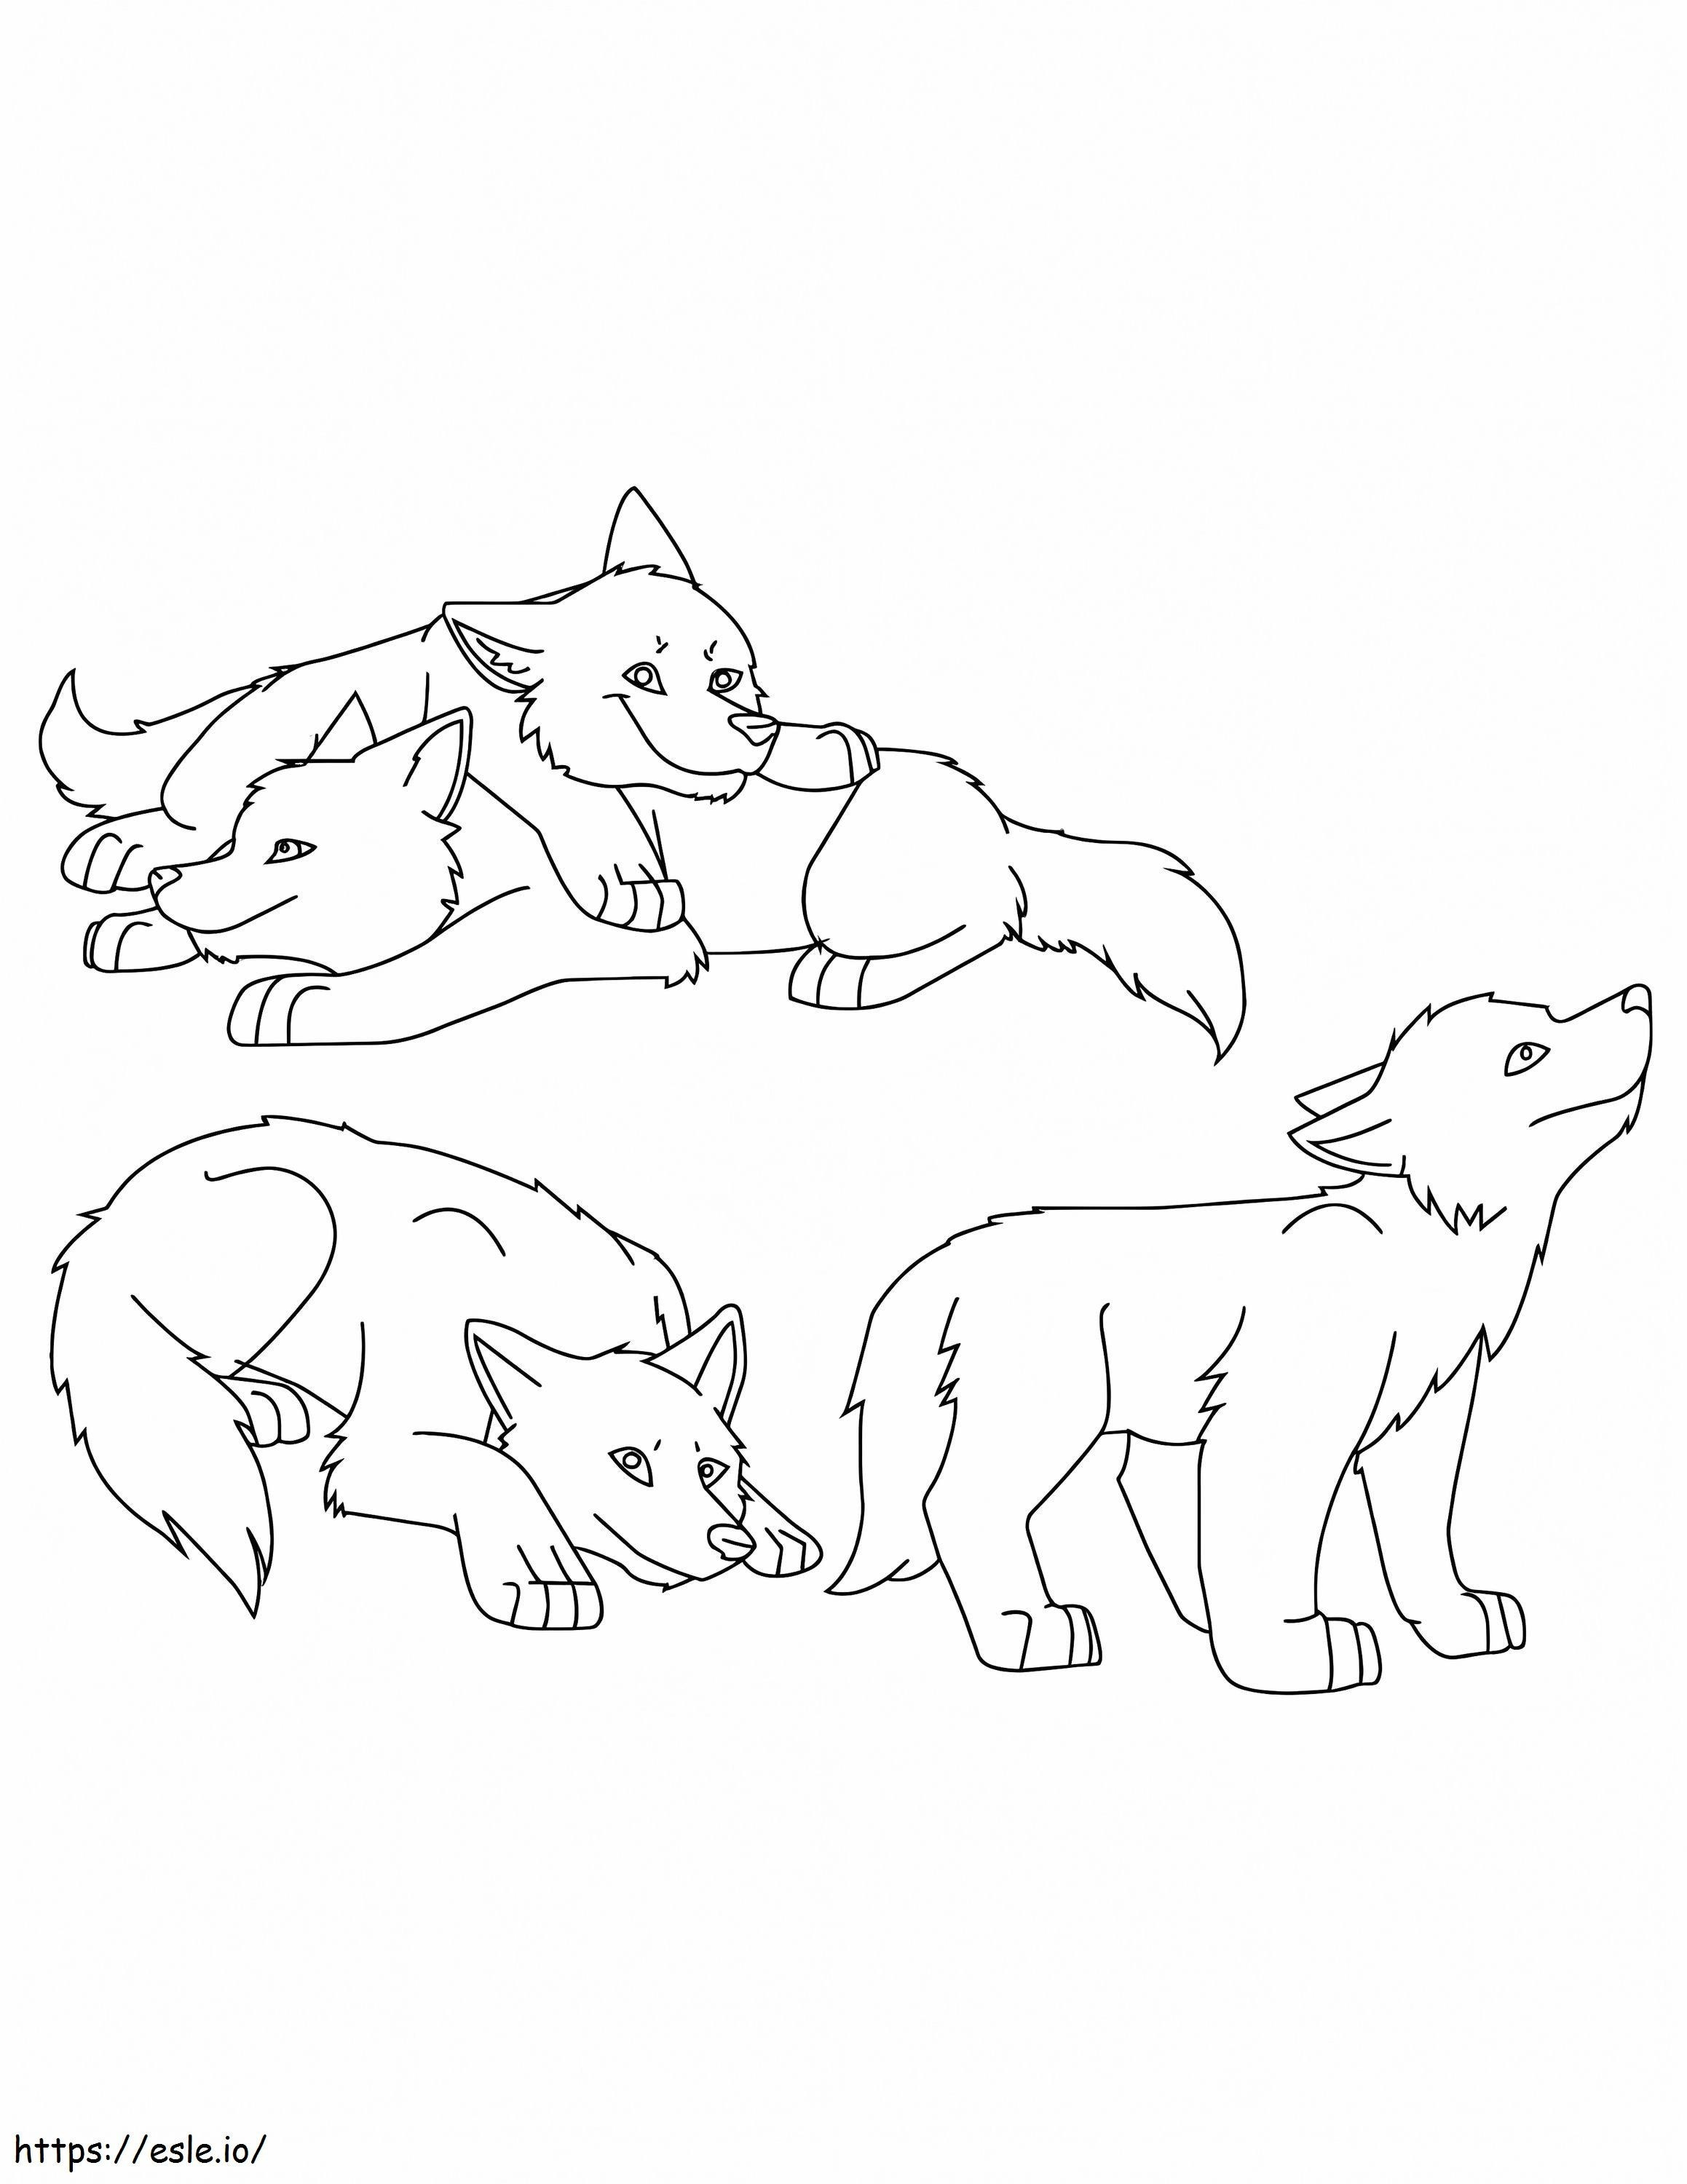 Vier kleine Wölfe ausmalbilder